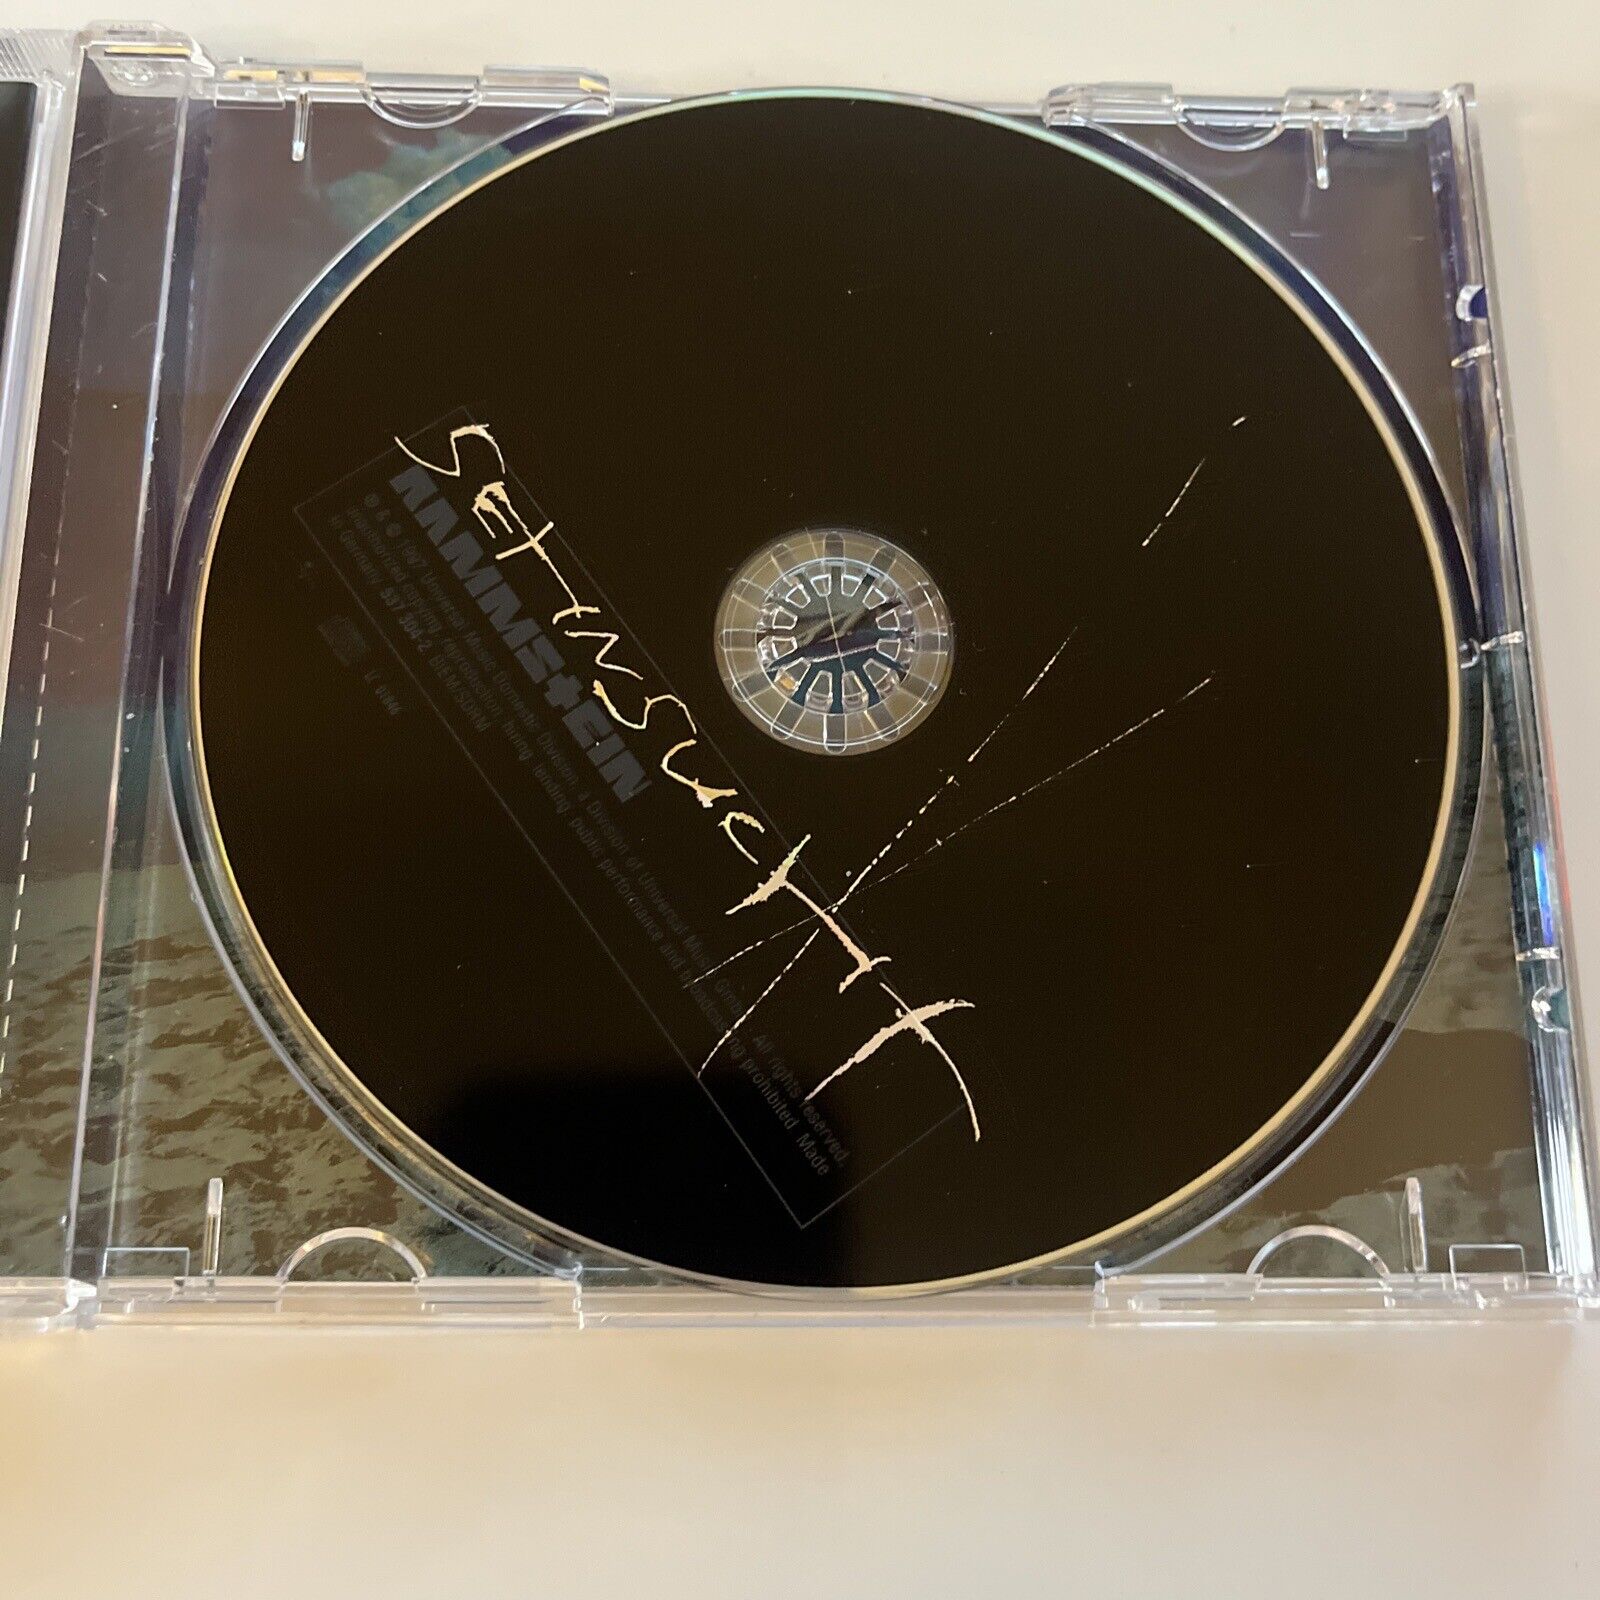 Rammstein - Sehnsucht (CD, 1997) 537 304-2 – Retro Unit